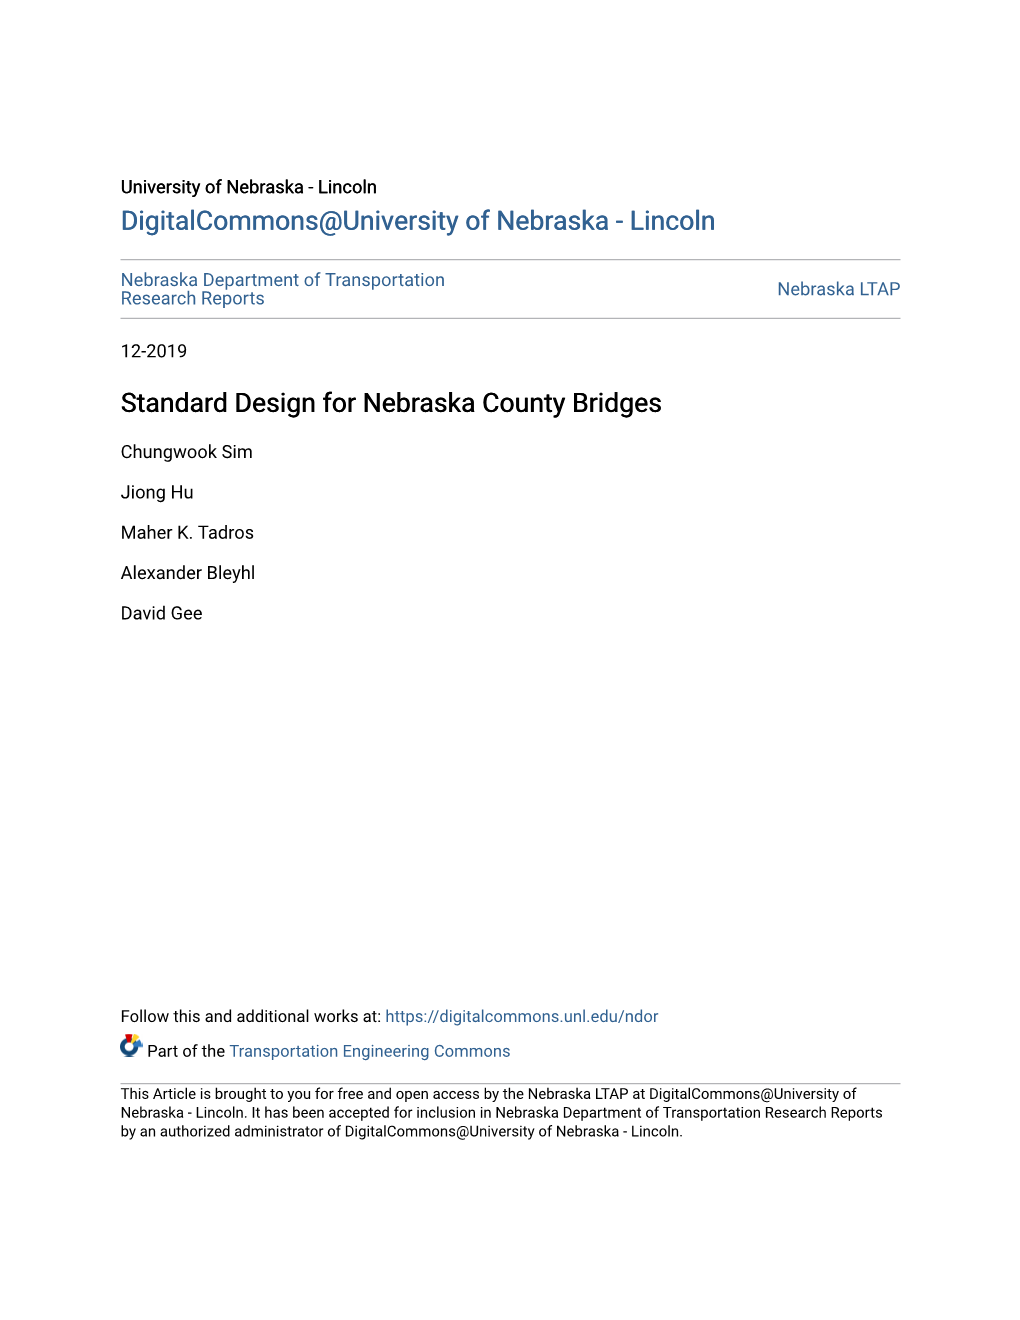 Standard Design for Nebraska County Bridges